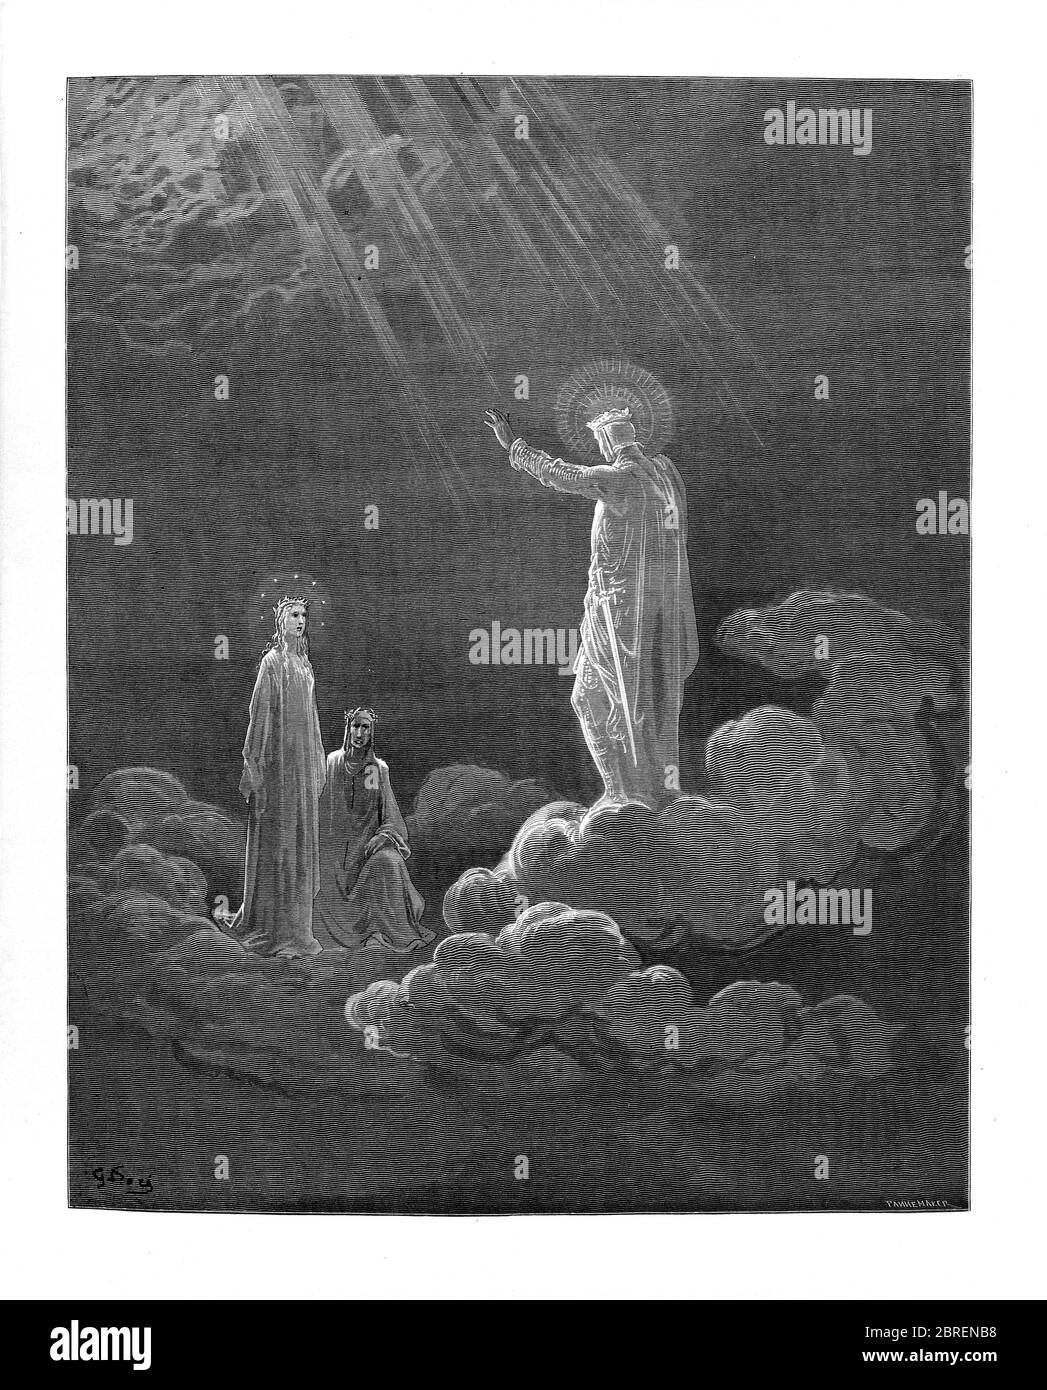 Paradiso ("Paradies" oder "Himmel") ist der dritte und letzte Teil von Dantes Göttlicher Komödie, nach dem Inferno und dem Purgatorio. Es ist eine Allegorie erzählt von Dantes Reise durch den Himmel, von Beatrice, die Theologie symbolisiert geführt. Das Paradies wird in dem Gedicht als eine Reihe konzentrischer Sphären dargestellt, die die Erde umgeben, bestehend aus Mond, Merkur, Venus, Sonne, Mars, Jupiter, Saturn, Fixsternen, Primummobil und schließlich Empyrean. Es wurde im frühen 14. Jahrhundert geschrieben. Allegorisch stellt das Gedicht den Aufstieg der Seele zu Gott dar. Aus der Göttlichen Komödie um 14. Jh. Stockfoto